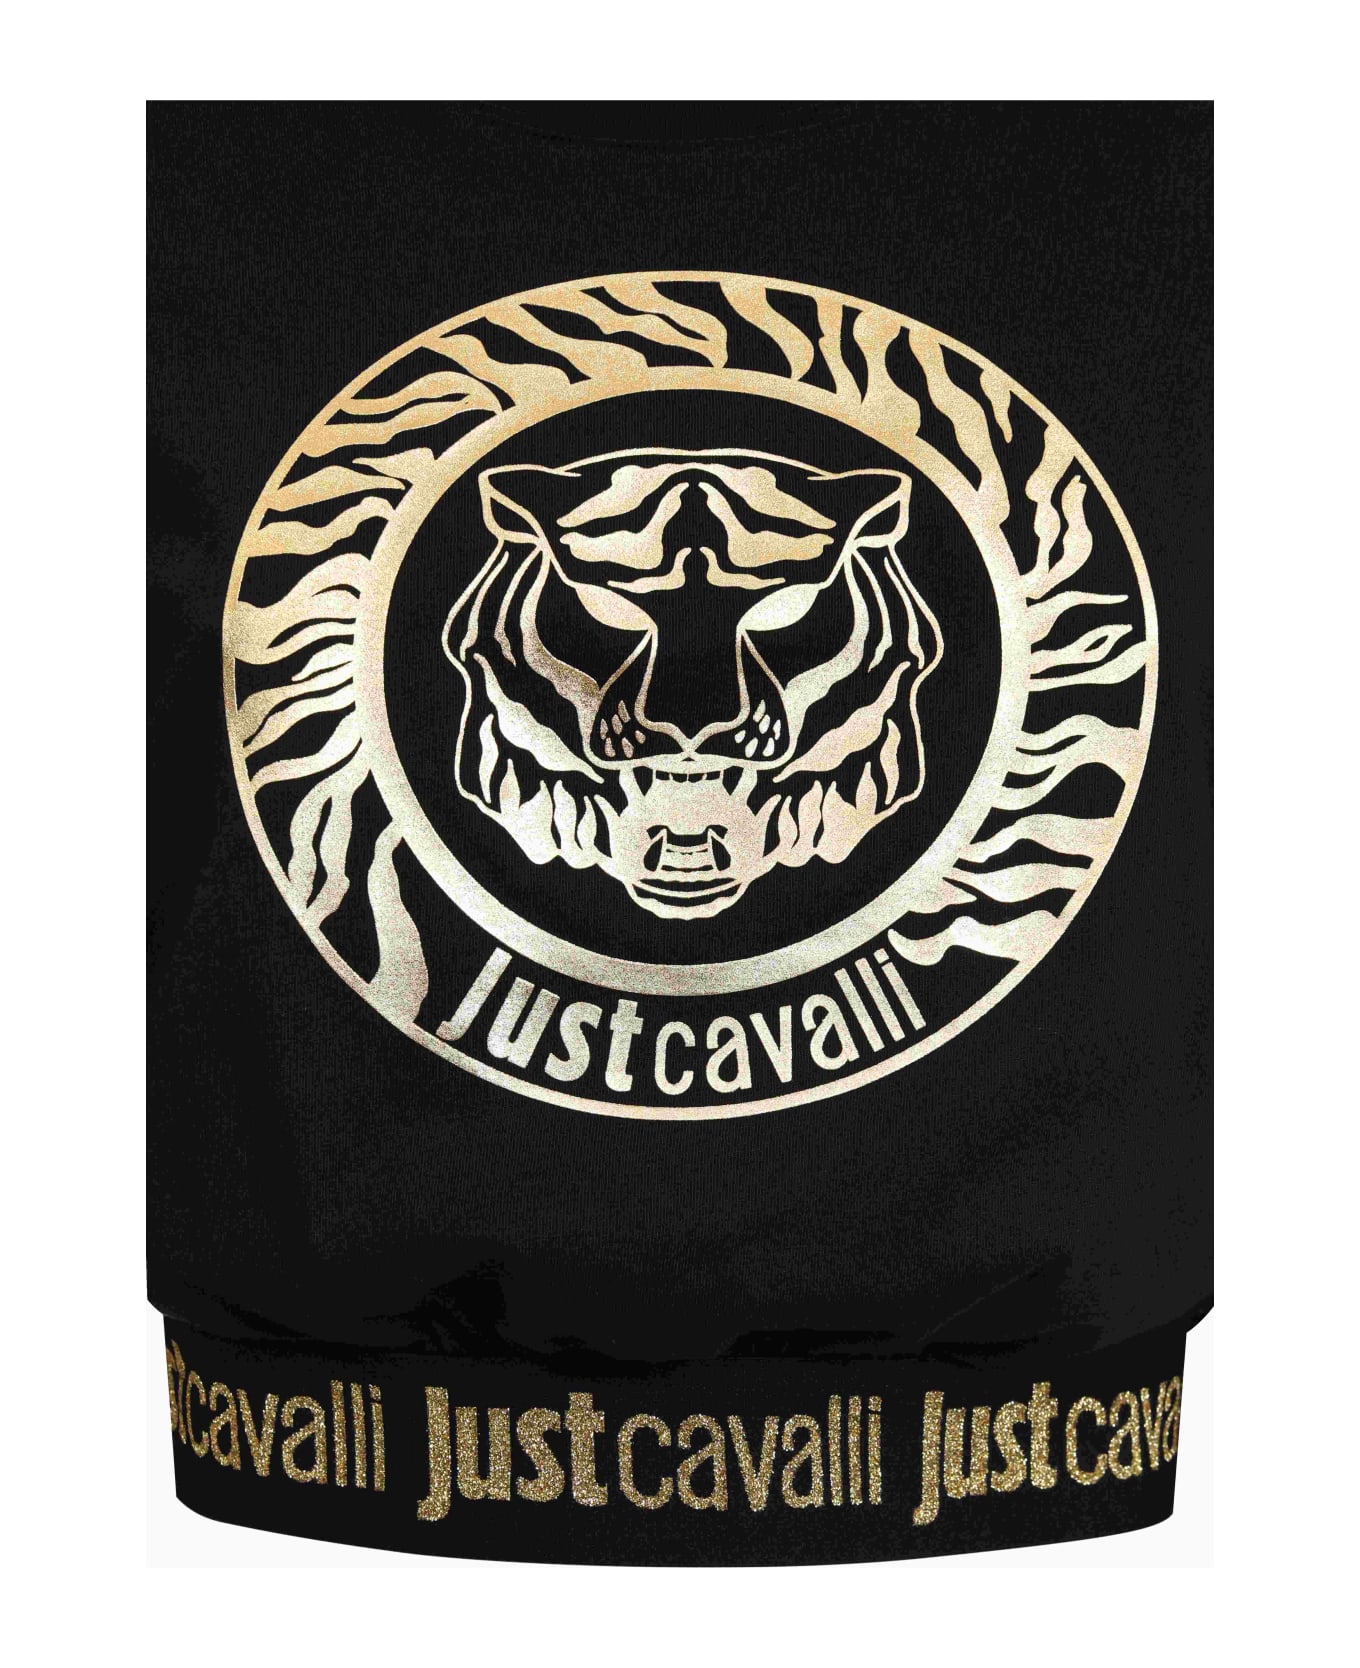 Just Cavalli T-shirt - Black